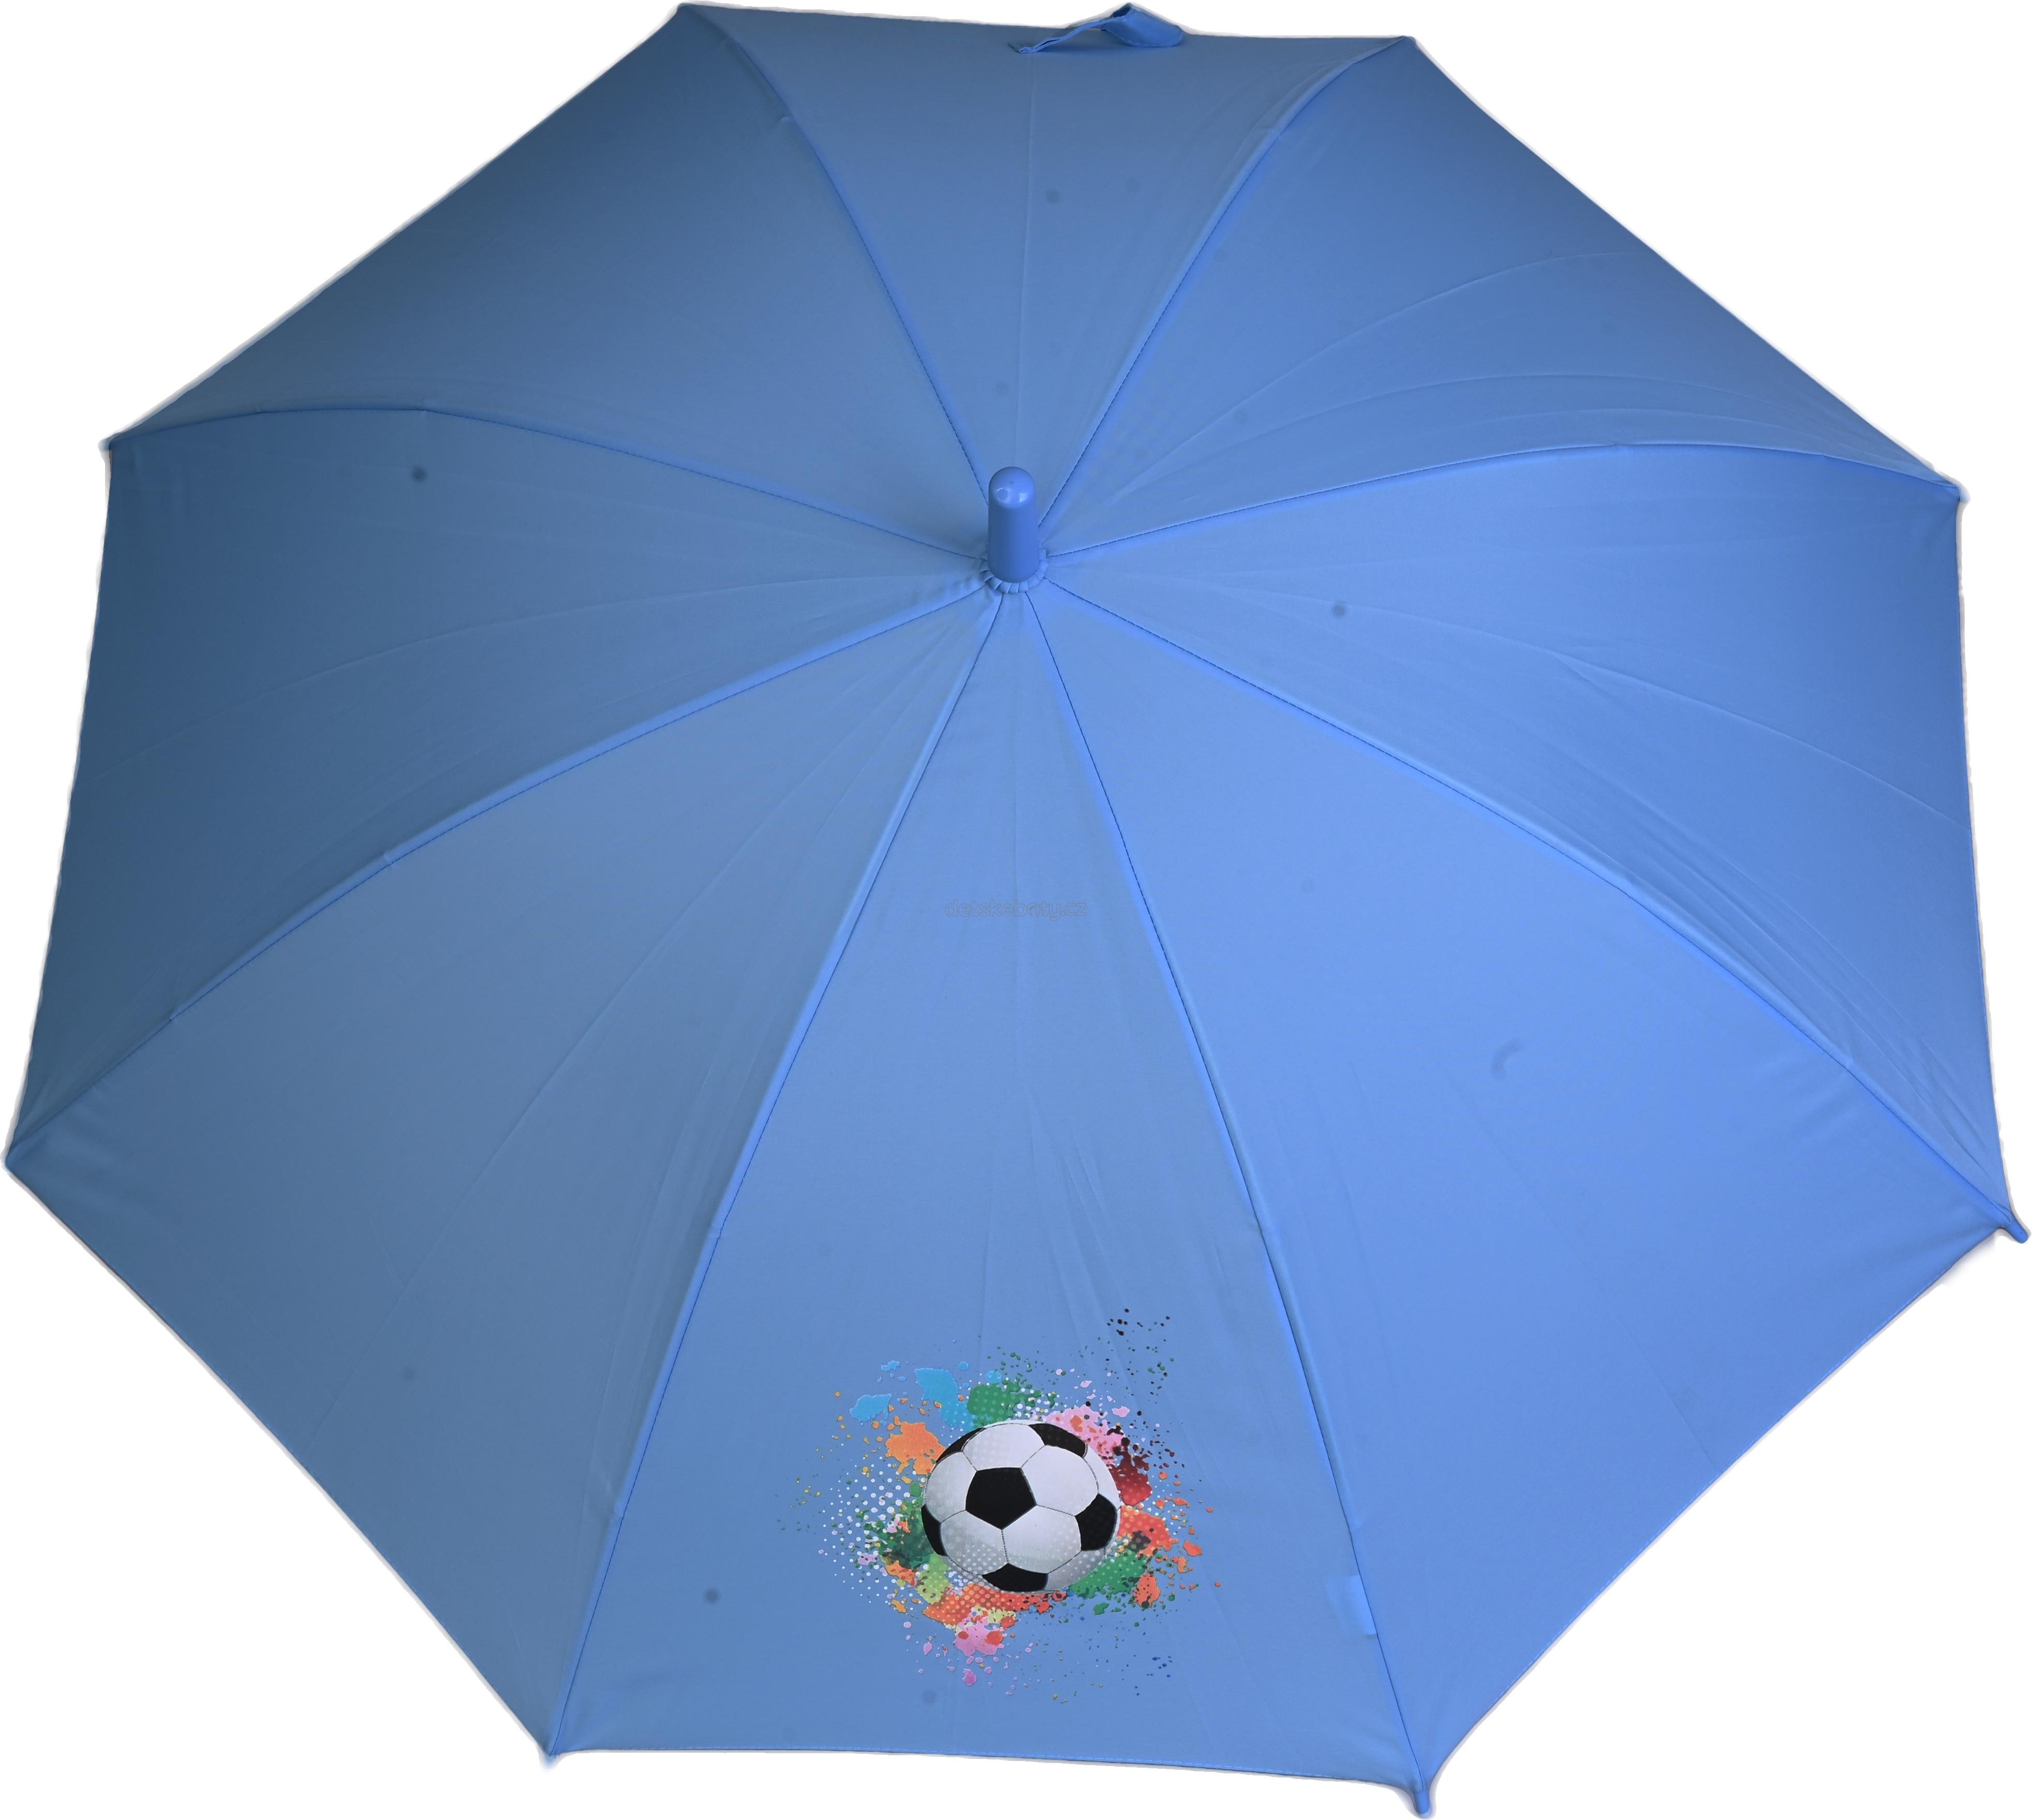 Deštník Doppler 72856 modrý míč